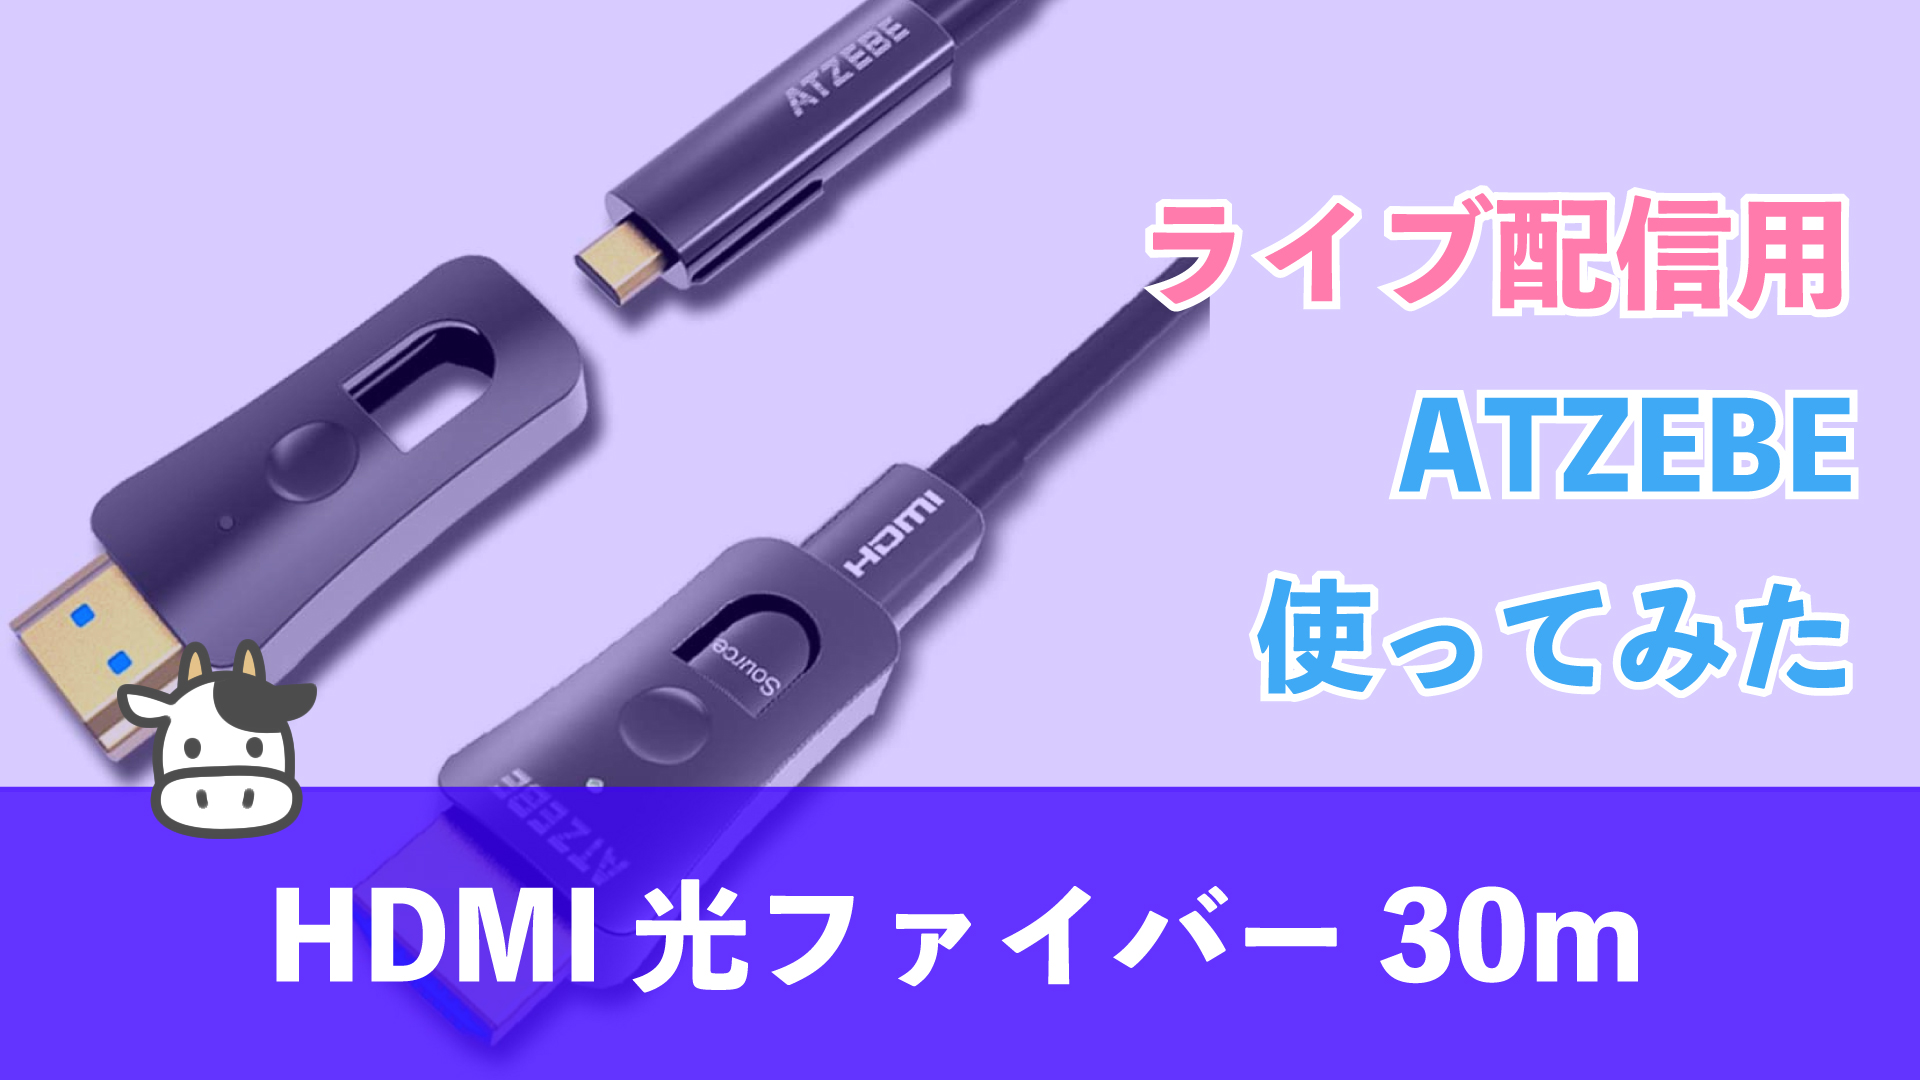 2063円 人気商品の ATZEBE 光ファイバーHDMI ケーブル 2m 4K 60Hz対応 18gbps超高速伝送 HDR Ultra HD YUV4:4